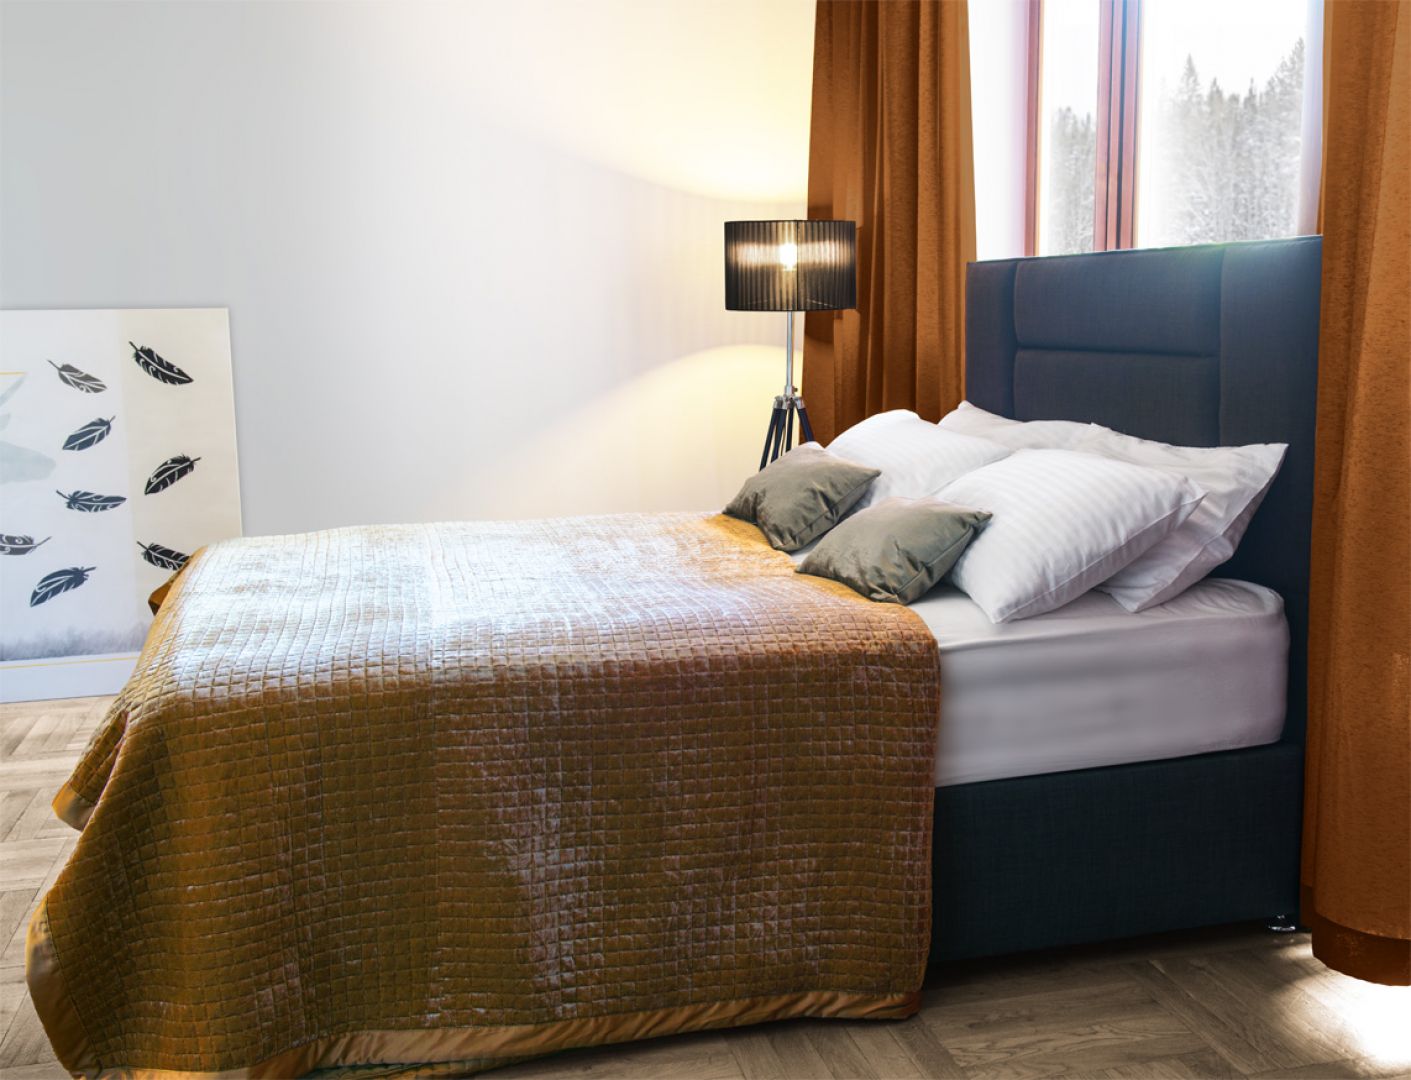 Łóżka angielskie charakteryzuje solidna konstrukcja tapicerowanej, najczęściej drewnianej, dość wysokiej podstawy, miękki zagłówek oraz wygodny materac. Fot. Cotton&Co